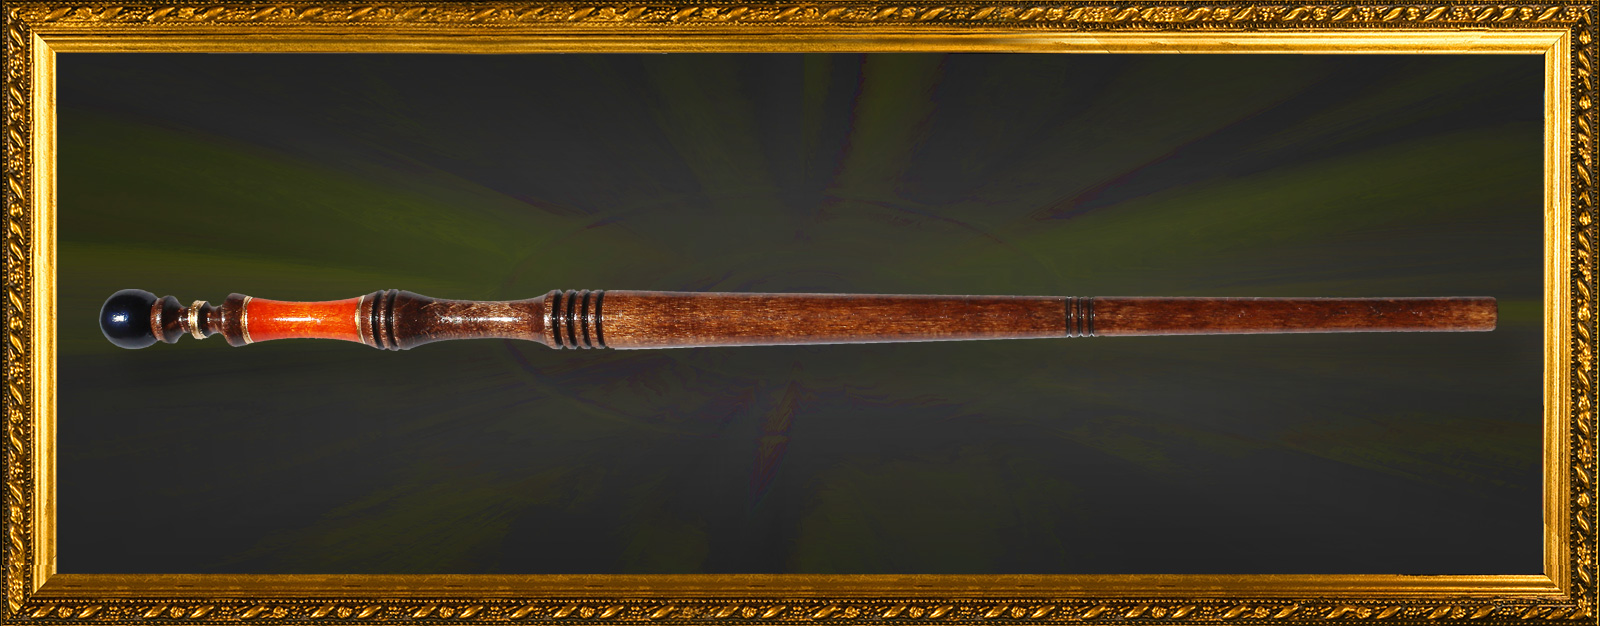 taratron magic wand